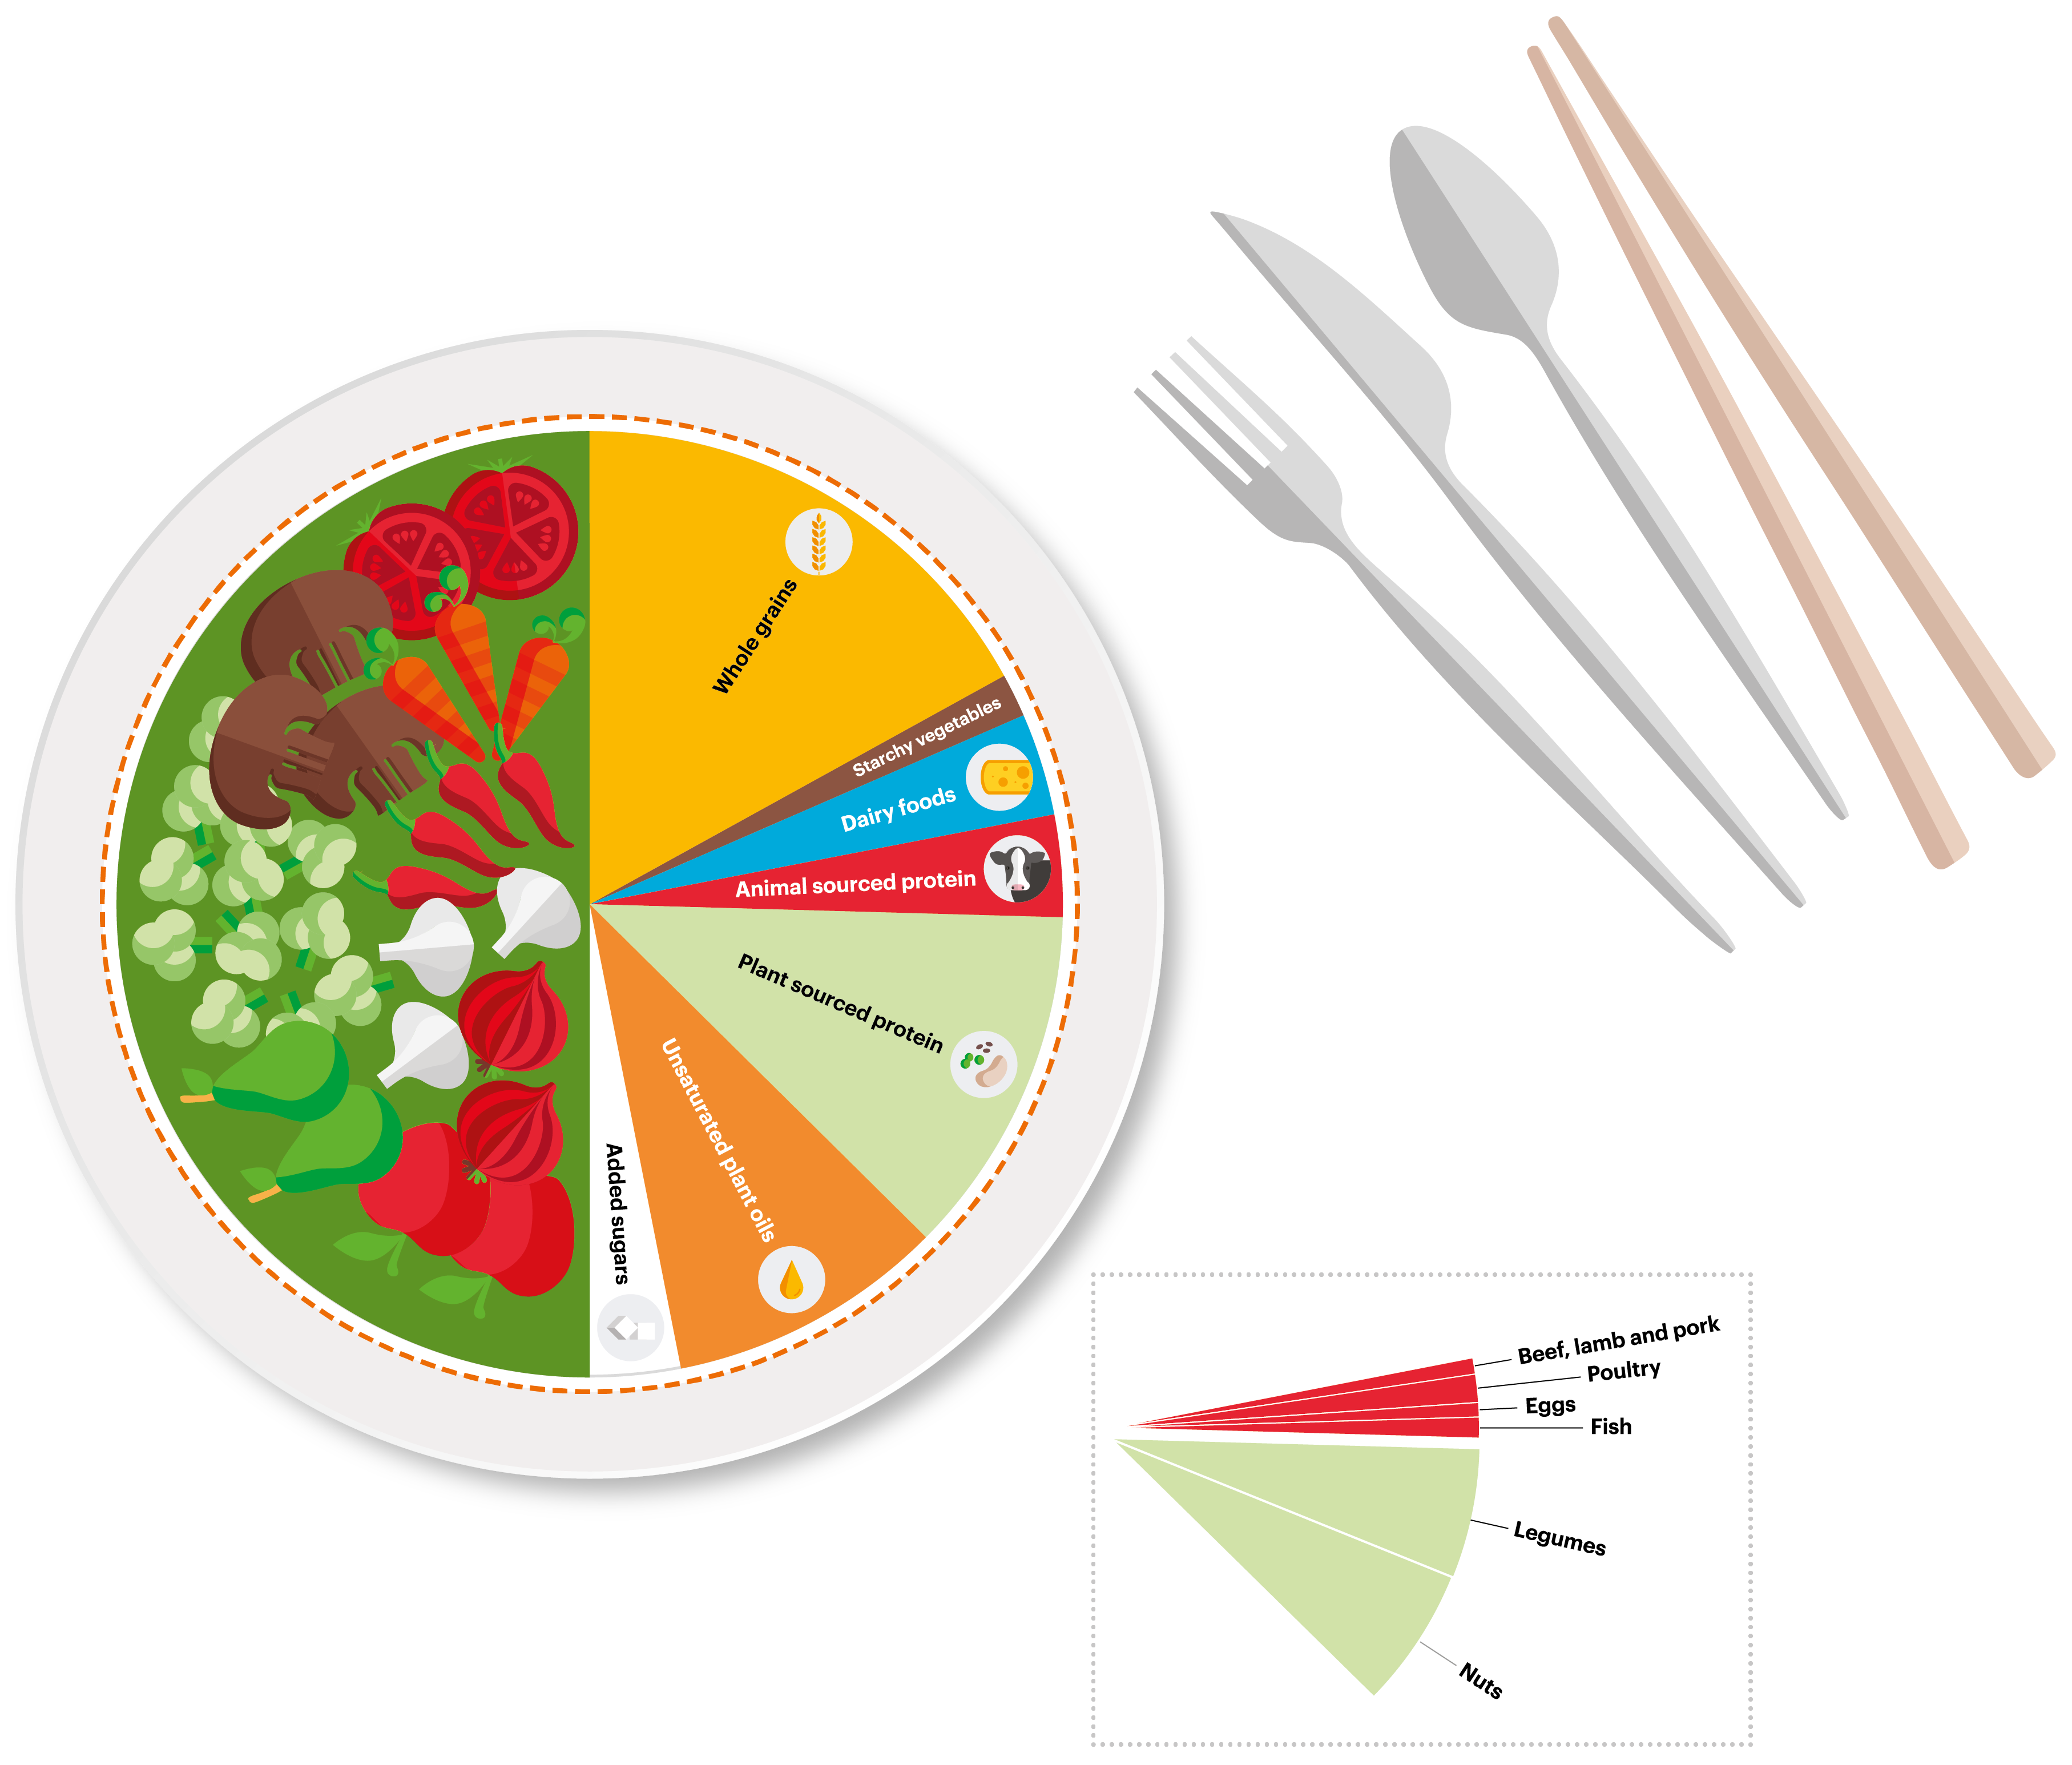 Kreisdiagramm über die Anteile verschiedener Lebensmittelgruppen nach der Planetary Health Diet